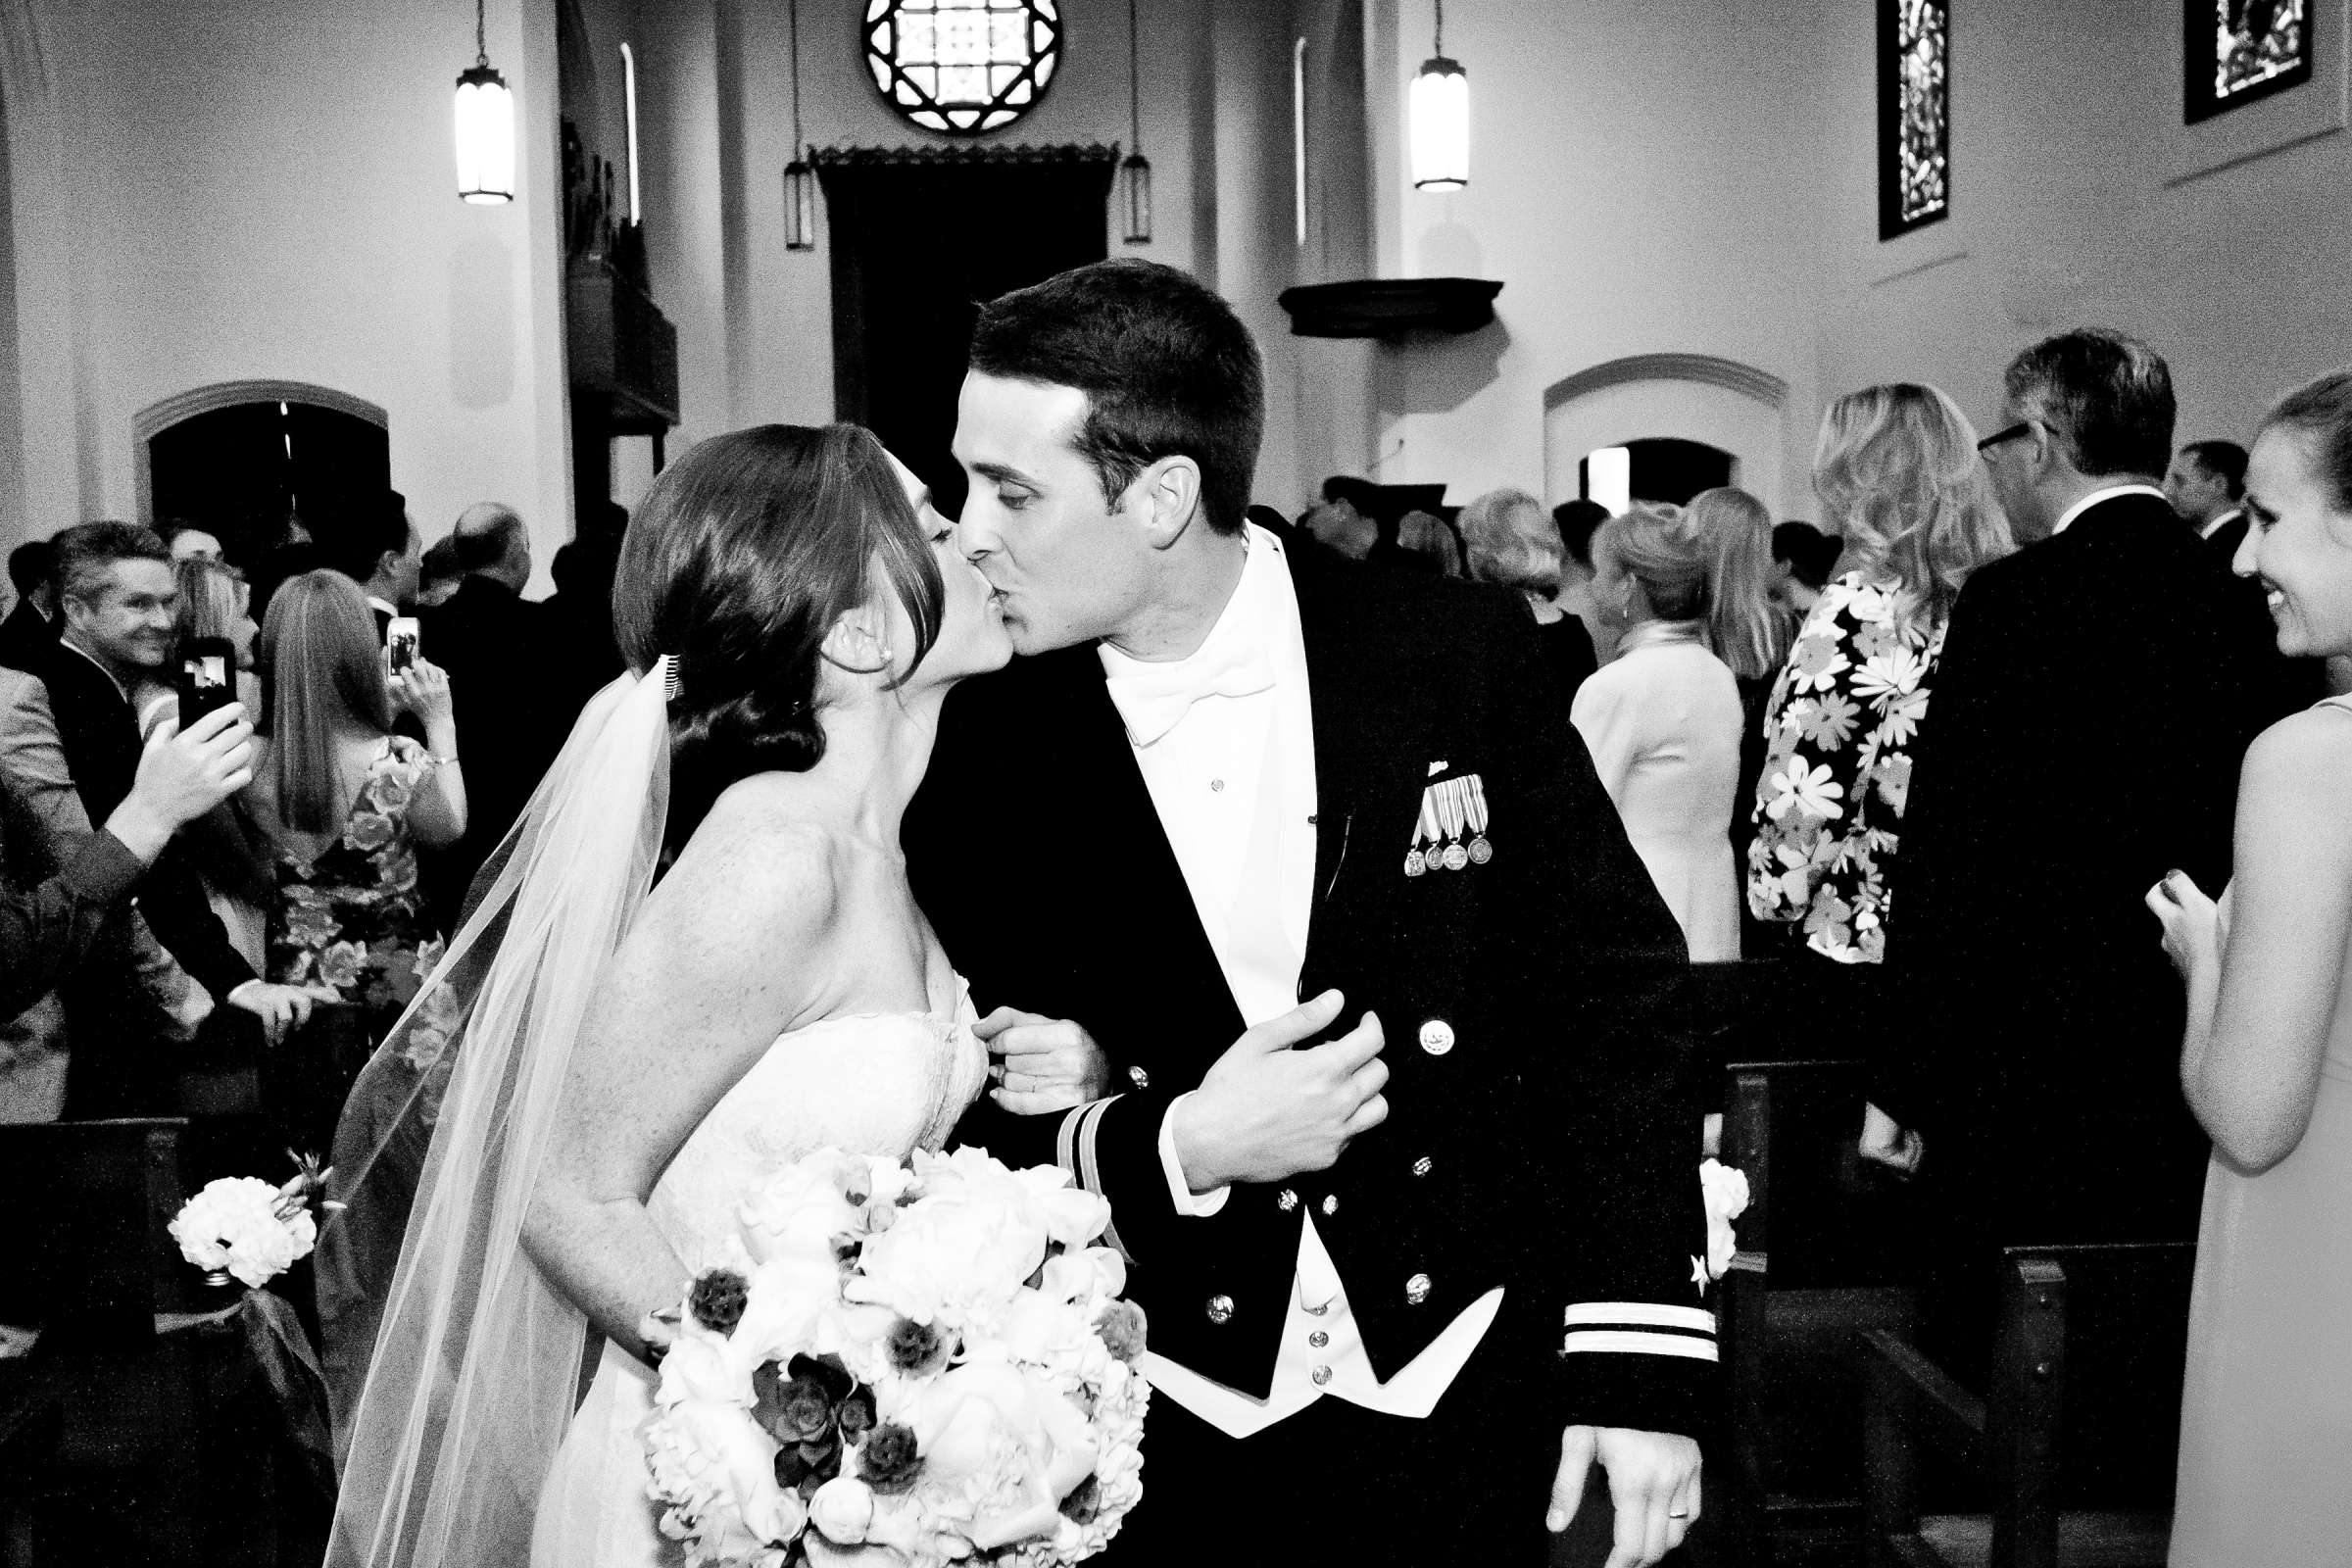 Admiral Kidd Club Wedding coordinated by I Do Weddings, Ashley and Rhett Wedding Photo #358478 by True Photography